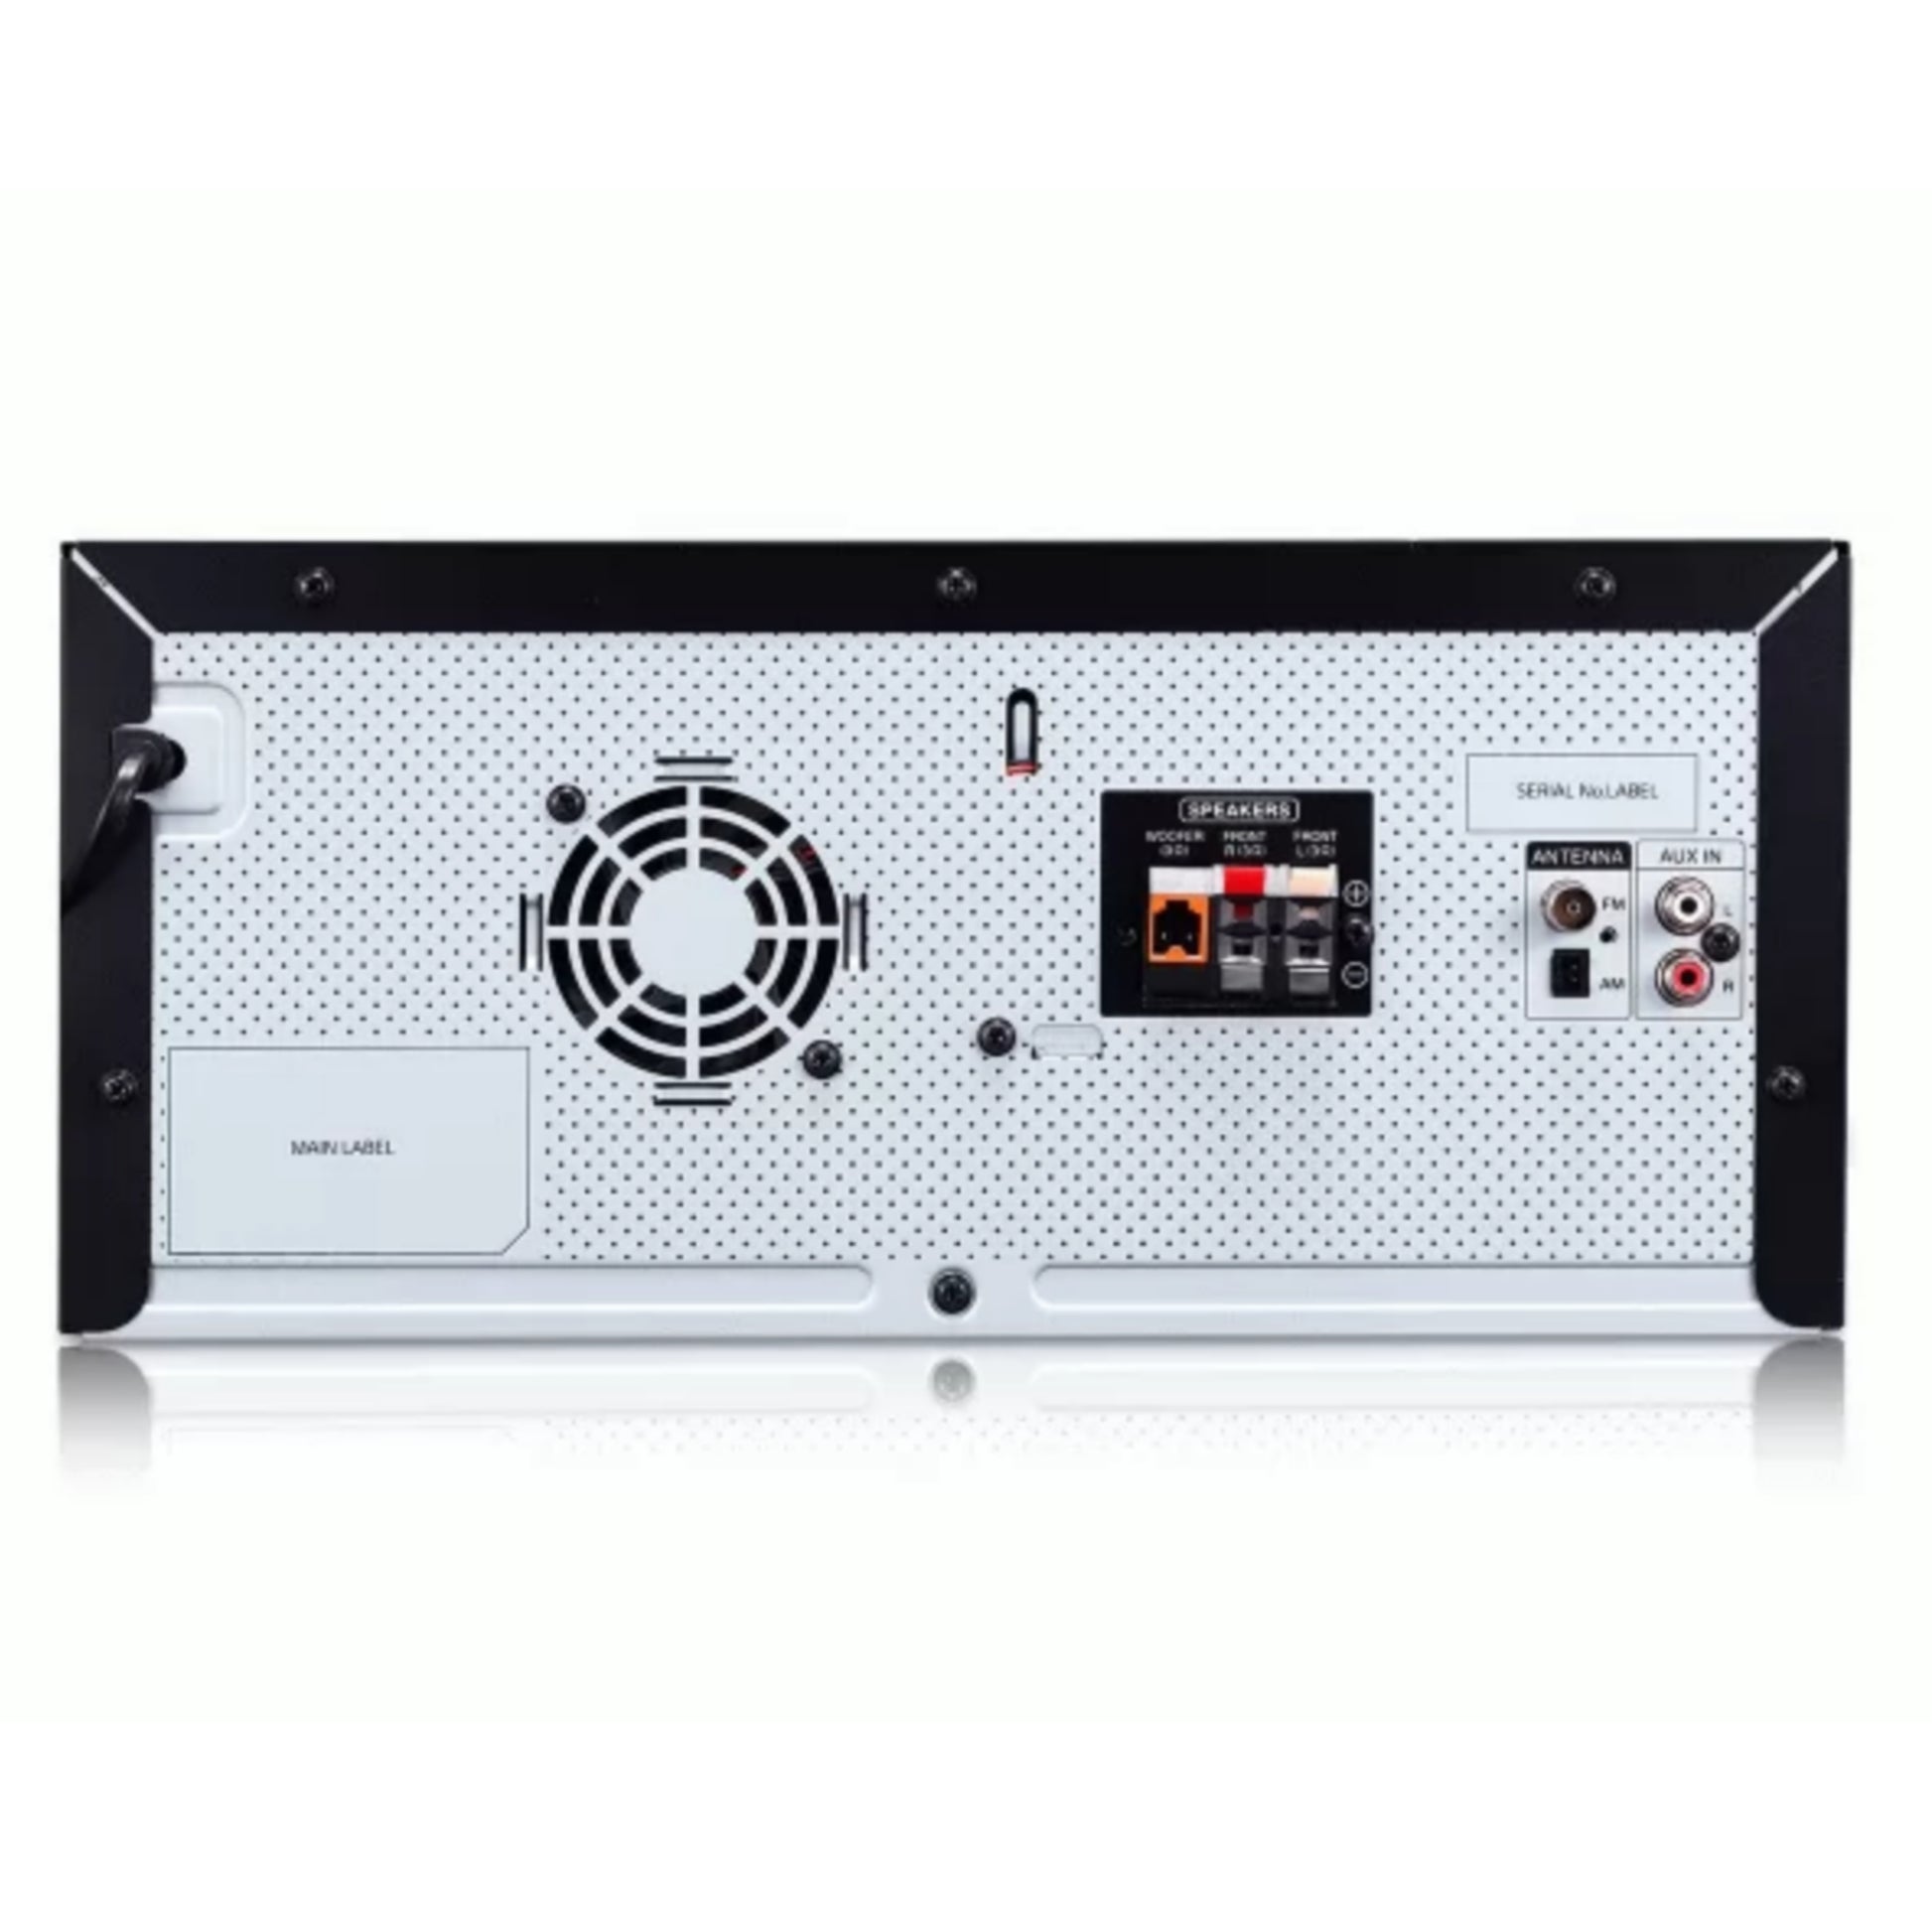 LG XBOOM CJ44 Mini HiFi Multimedia + Karaoke + Auto DJ Home Theater (Rear View) - Brand New